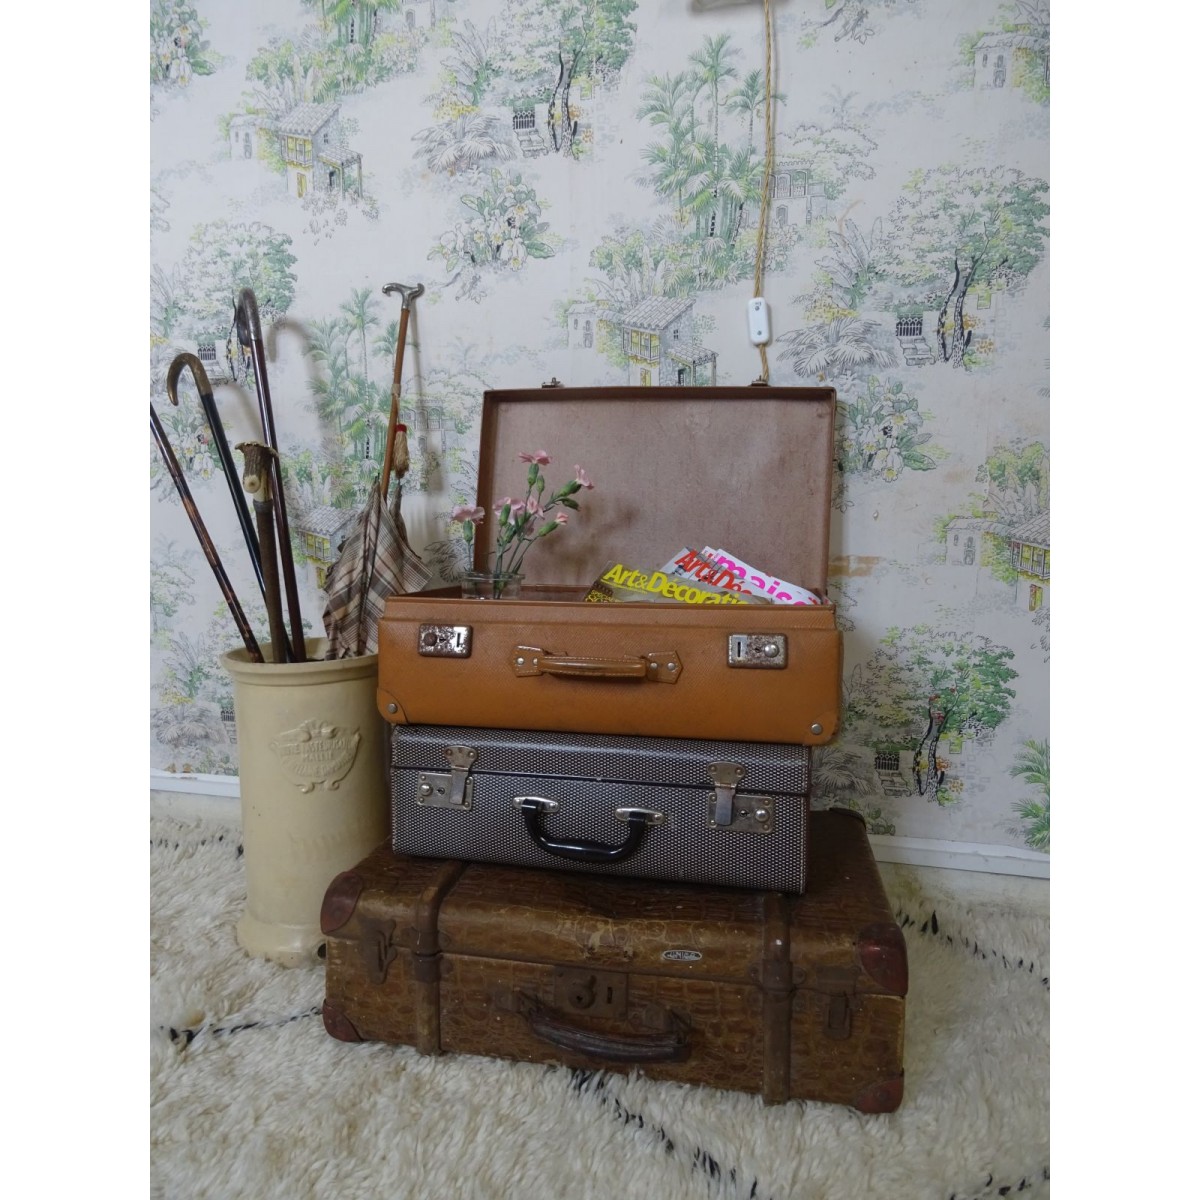 Malle de voyage ancienne rénovée - Ma valise en carton